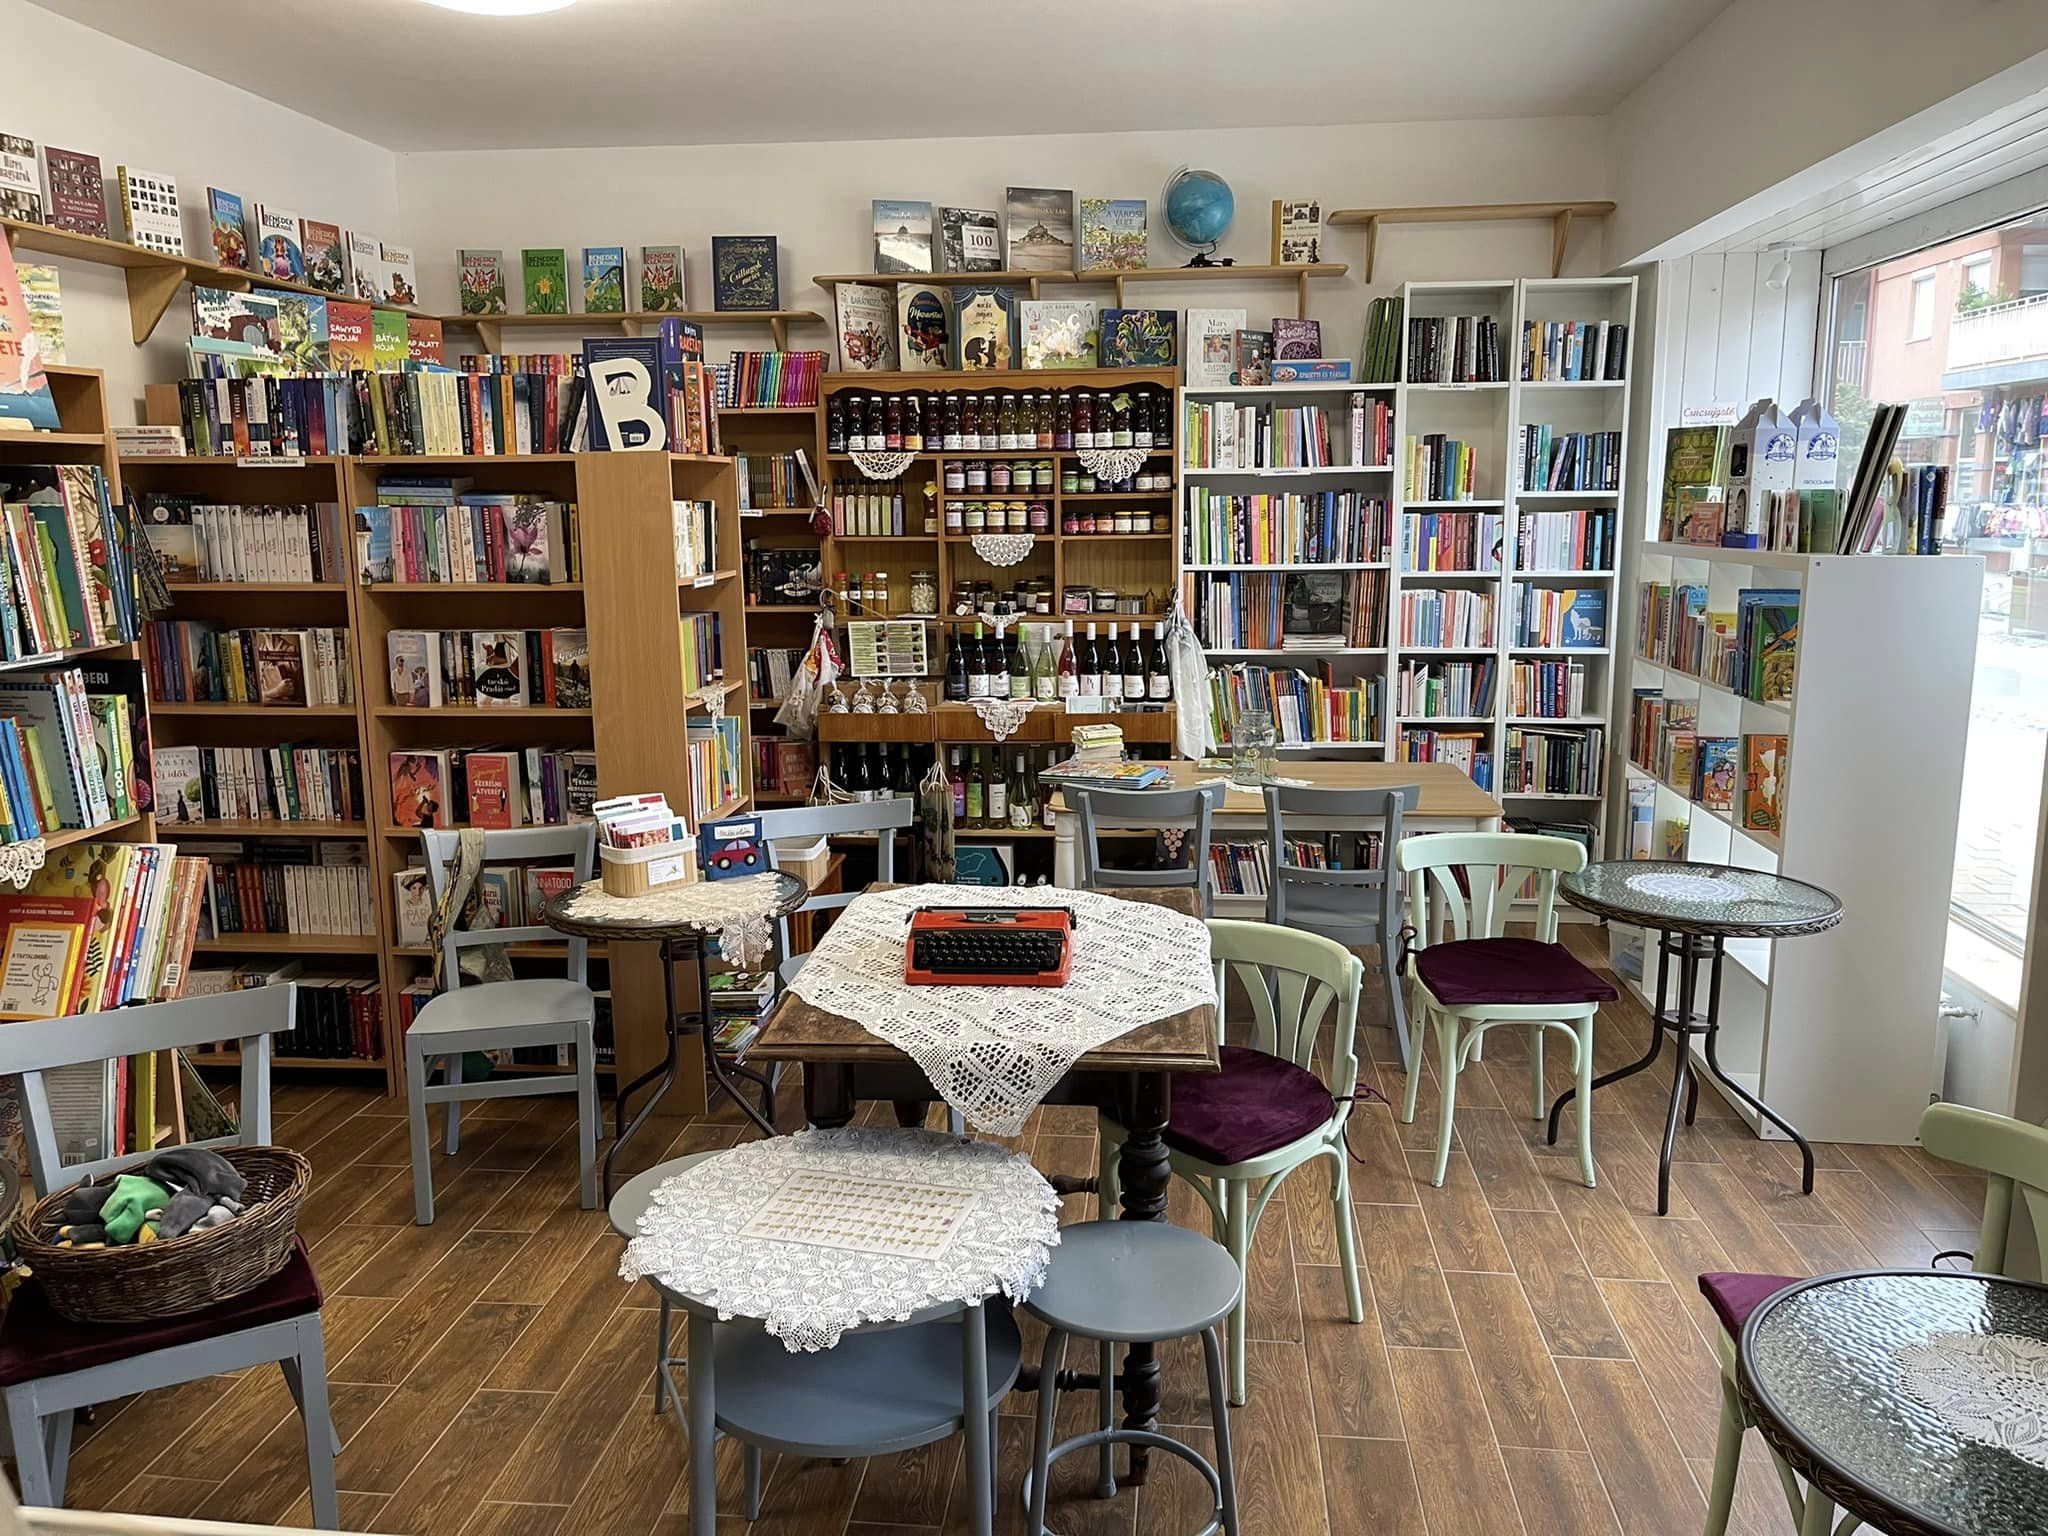 5 imádnivaló könyveskuckó Budapest agglomerációjában, ahol kávé mellett bújhatjuk a könyveket